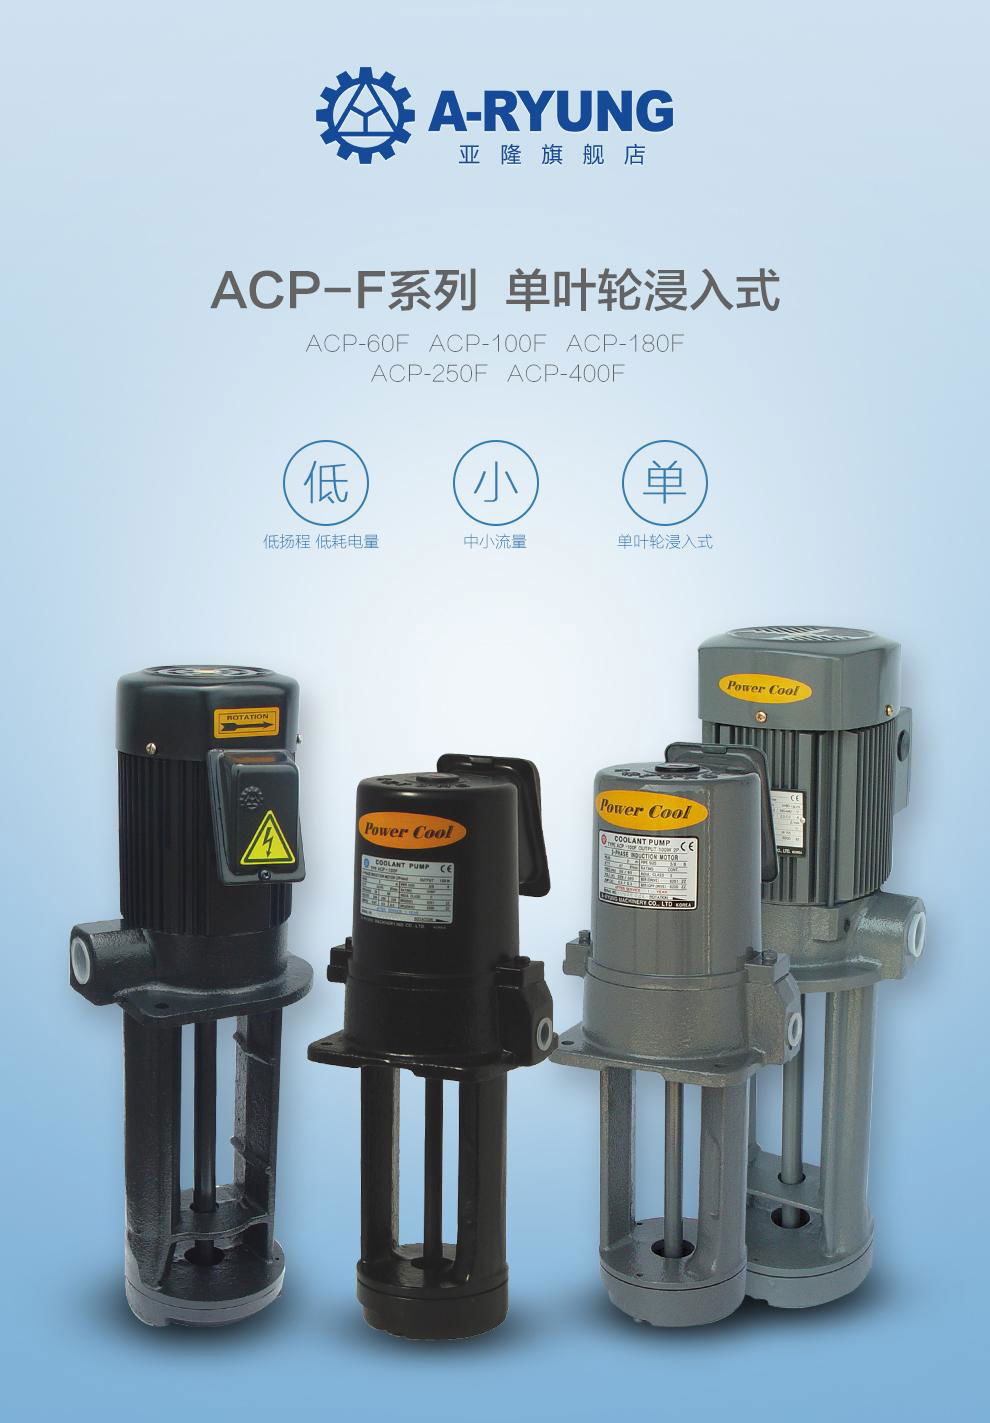 ACP-60F亞隆冷卻泵